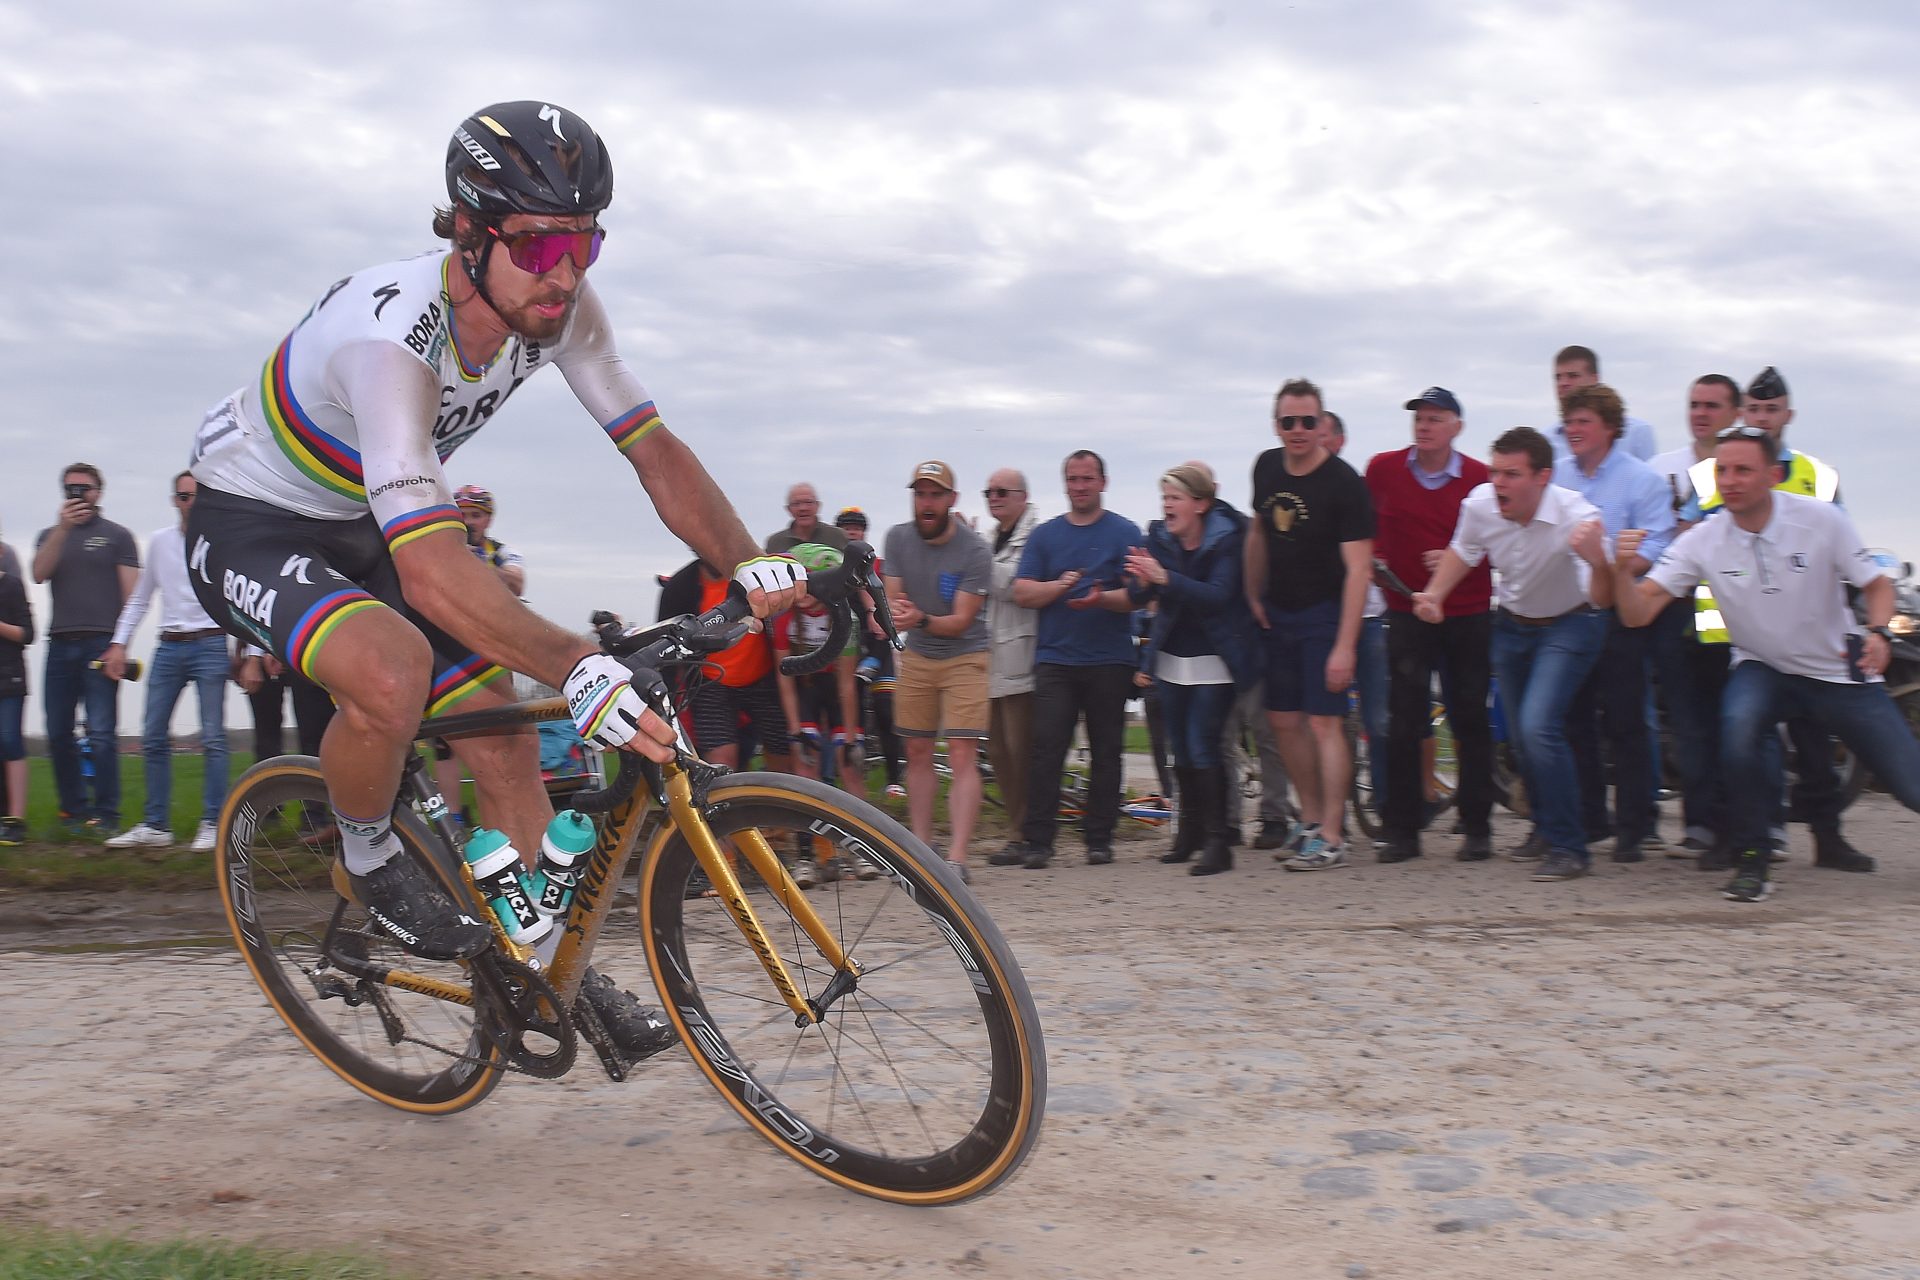 A look back at Peter Sagan's impressive career and 2018 Paris-Roubaix win